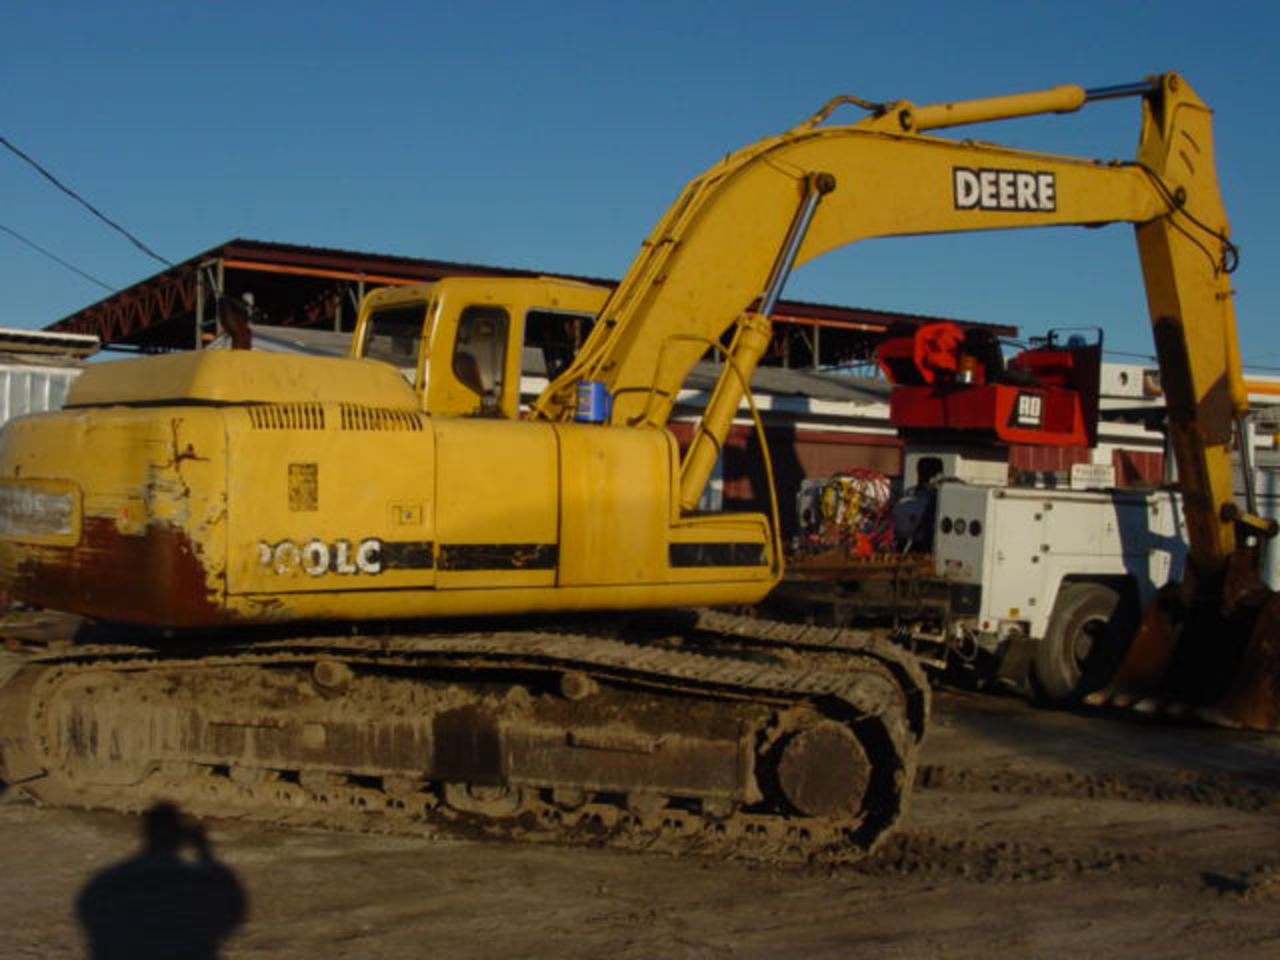 John Deere 200LC - John Deere 200LC Parts | Heavy Equipment Parts ...